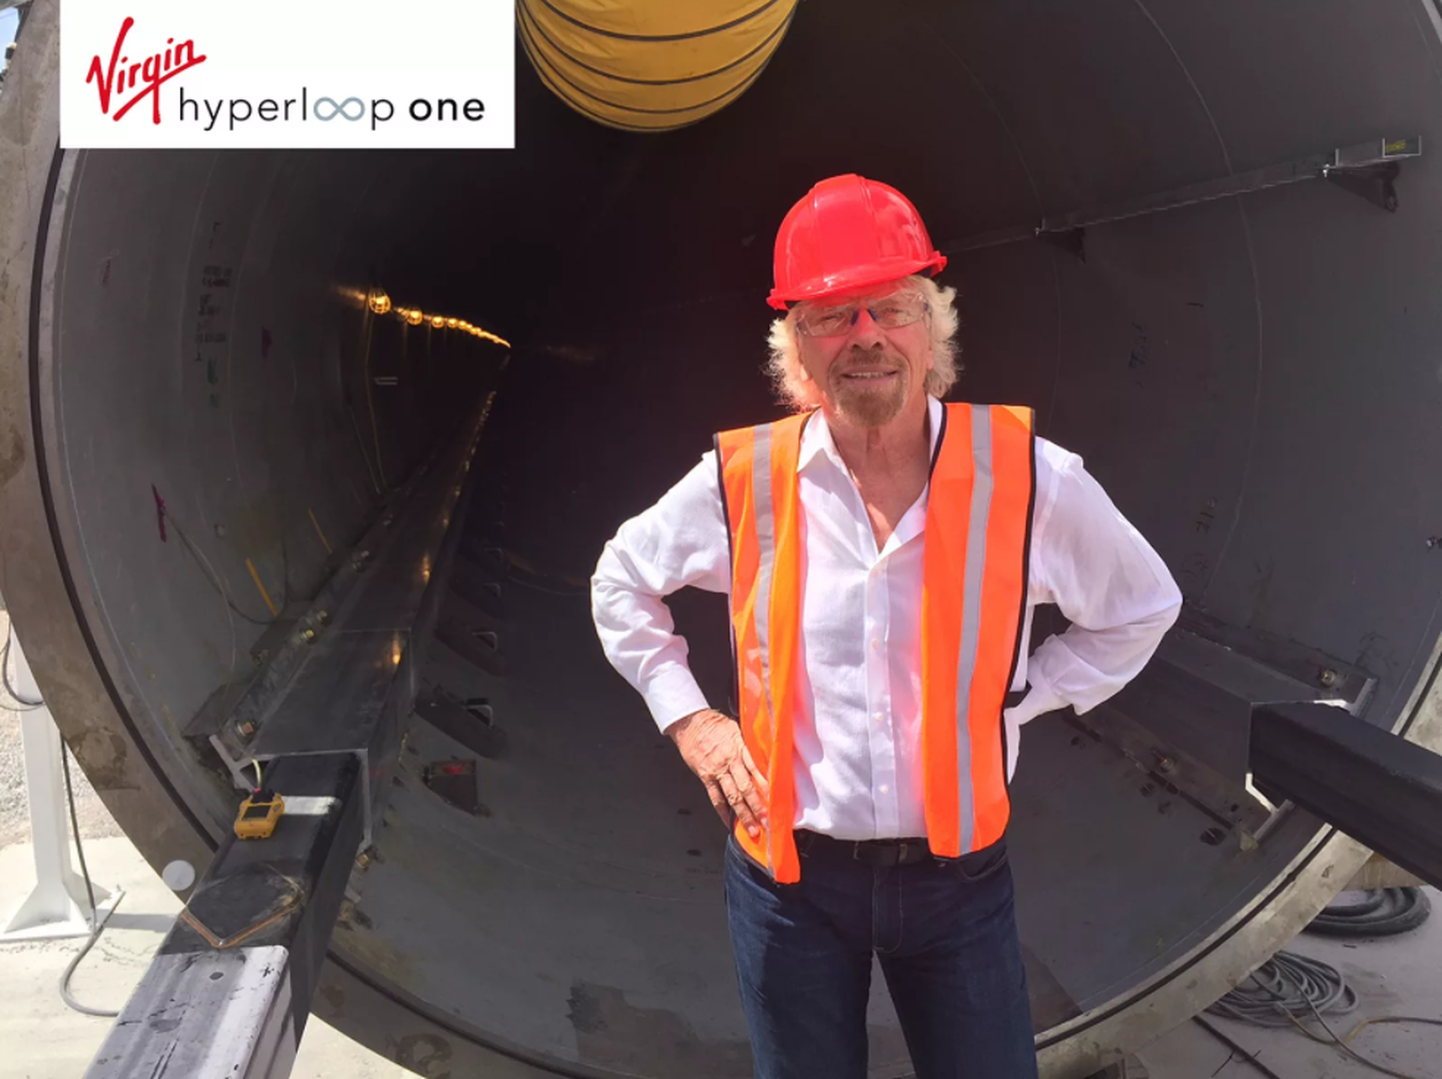 Richard Branson poseerimas Hyperloop One'i tunneli taustal. Pildi ülemisel serval on ka Hyperloop One'i uus logo.